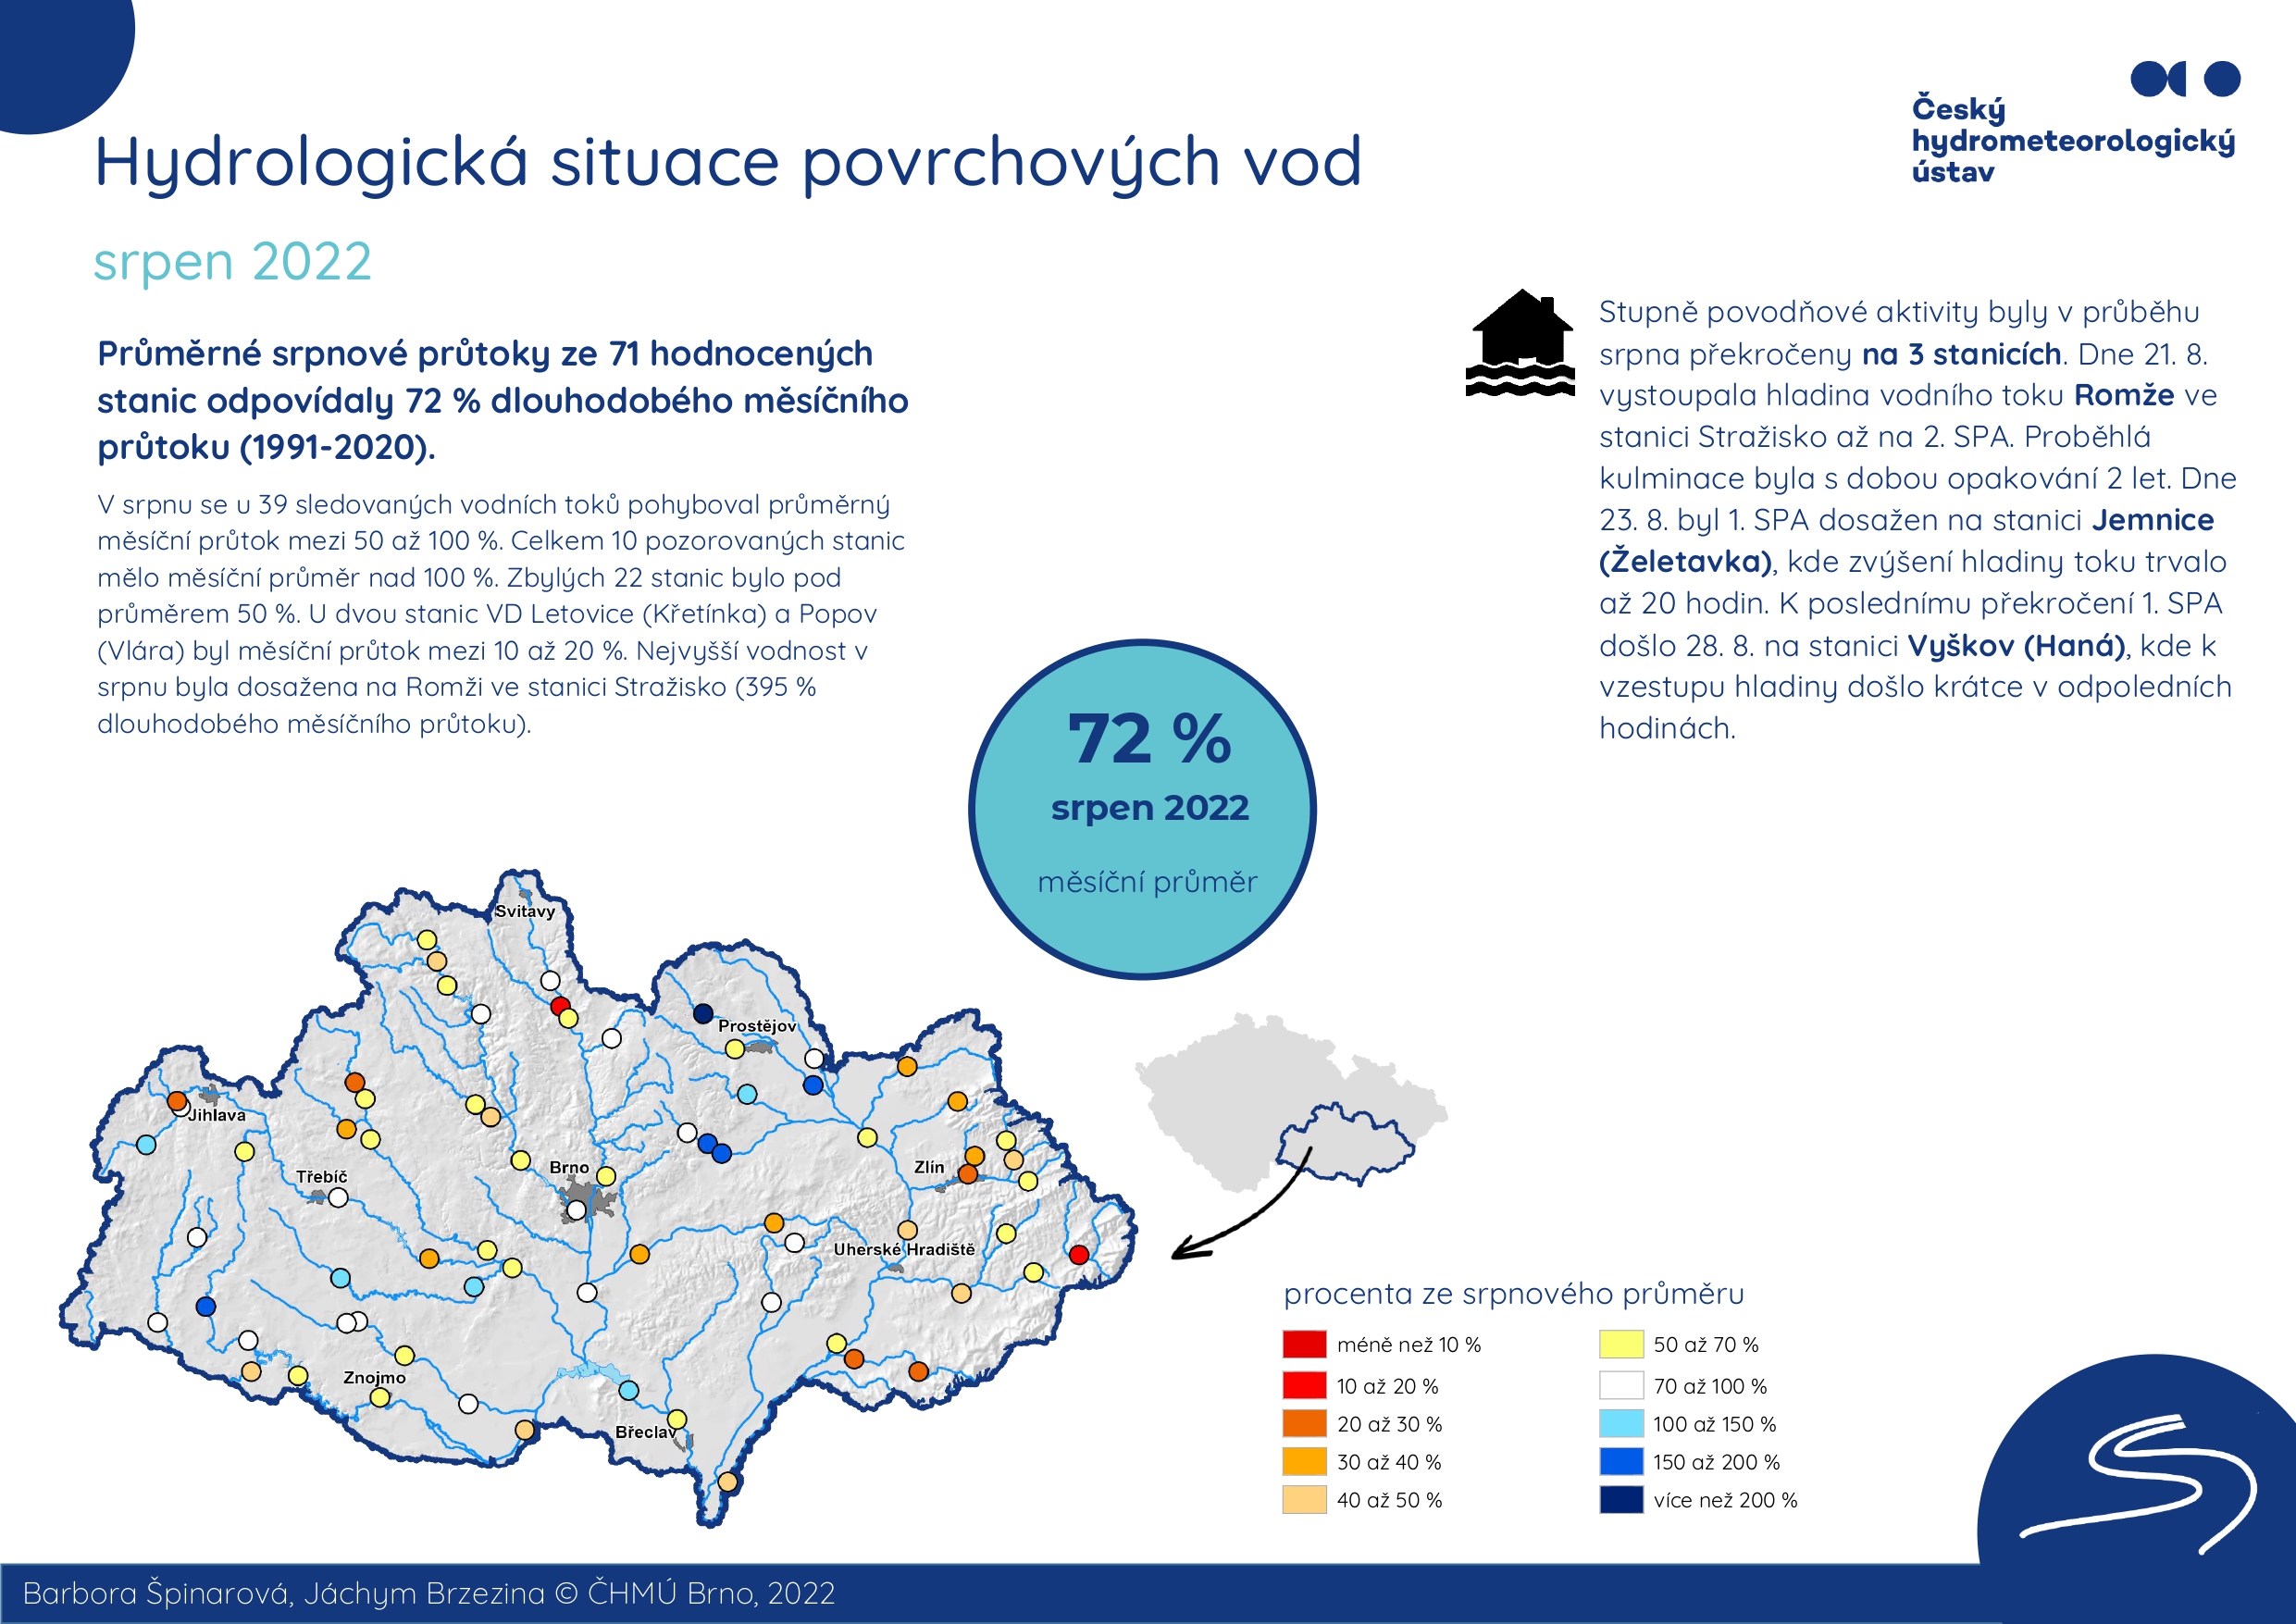 Hydrologická situace povrchových vod na pobočce Brno – srpen 20221 min čtení